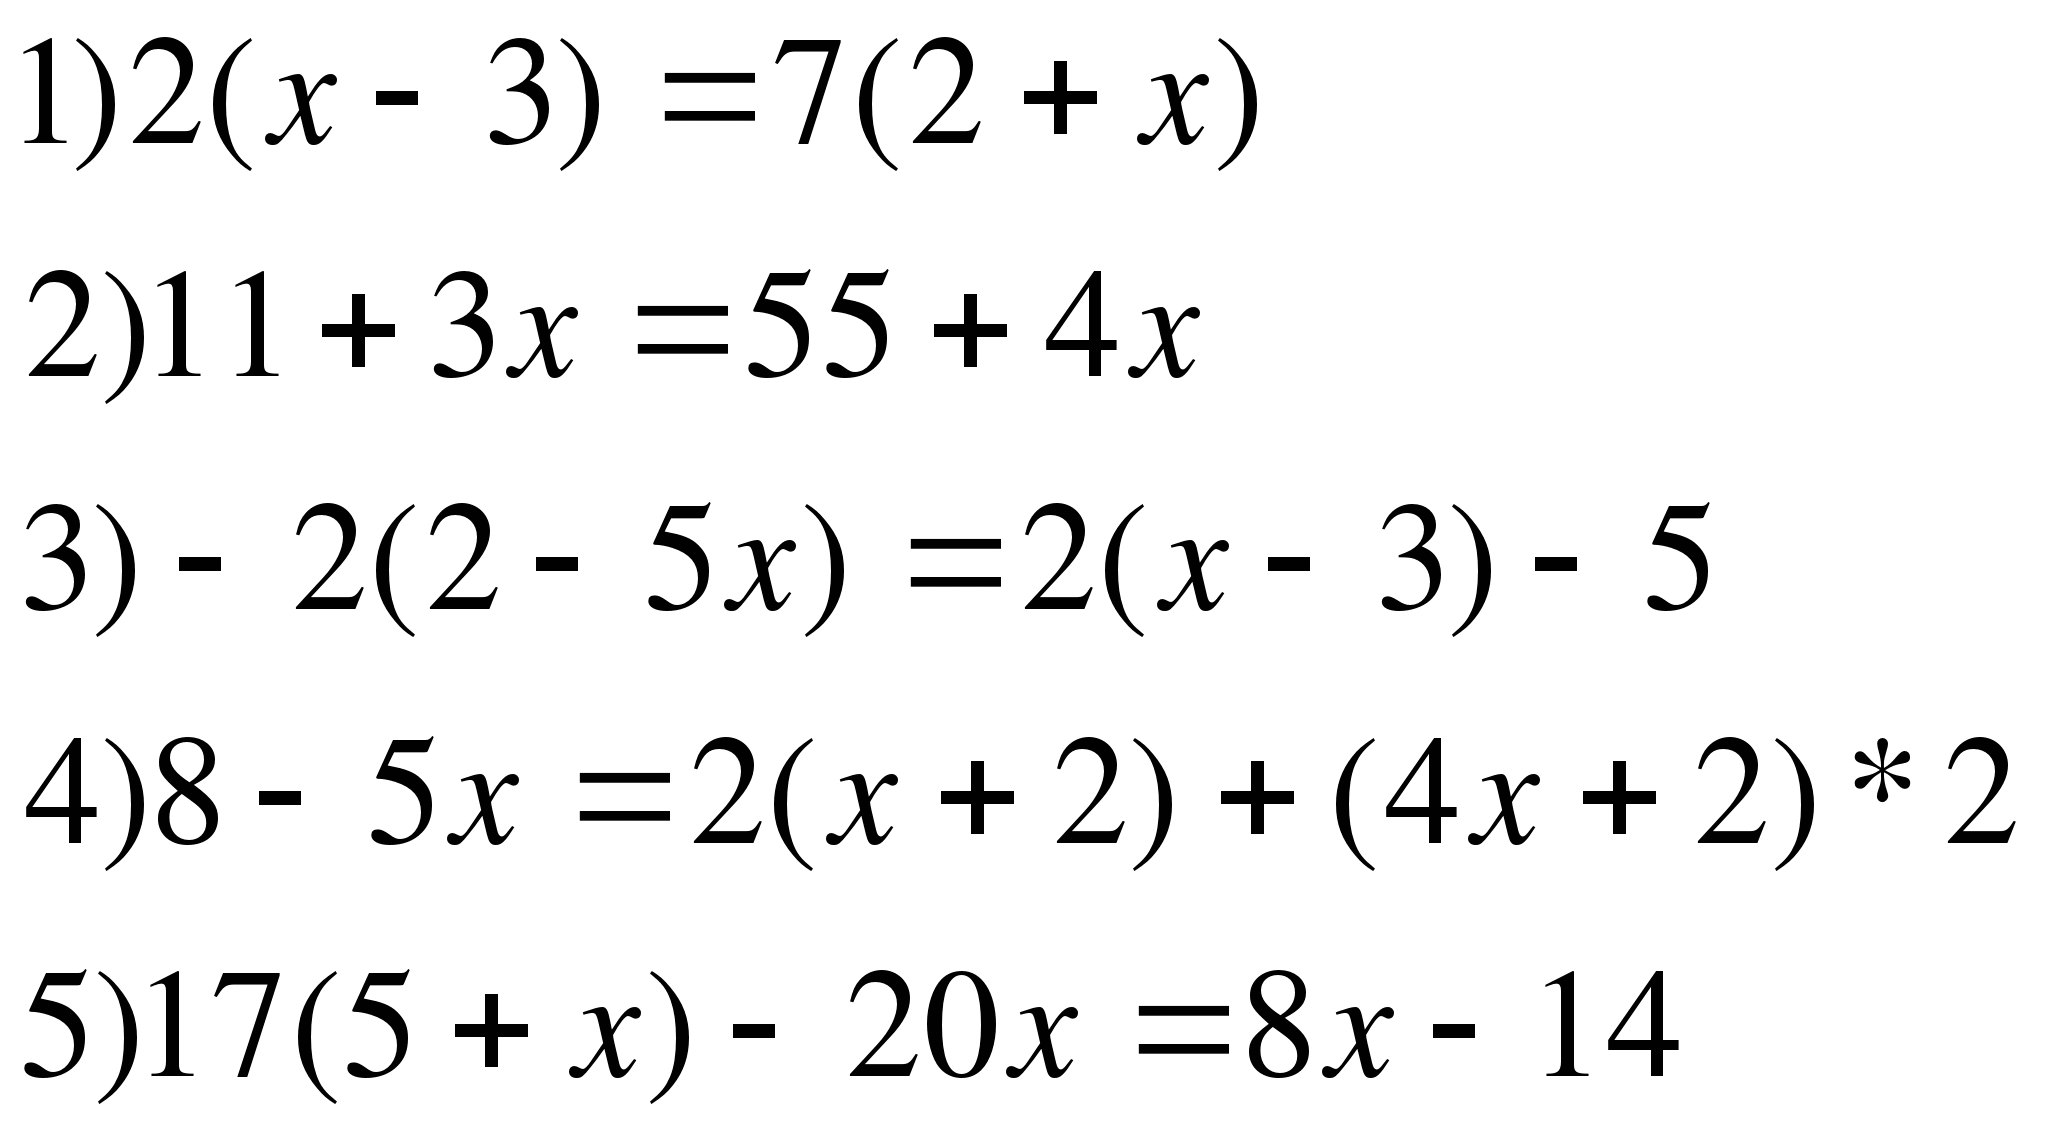 Математика 6 класс примеры для тренировки. Решение уравнений 6 класс математика. Уравнения 6 класс по математике. Решить уравнение 6 класс. Уравнения 6 класс по математике со скобками.